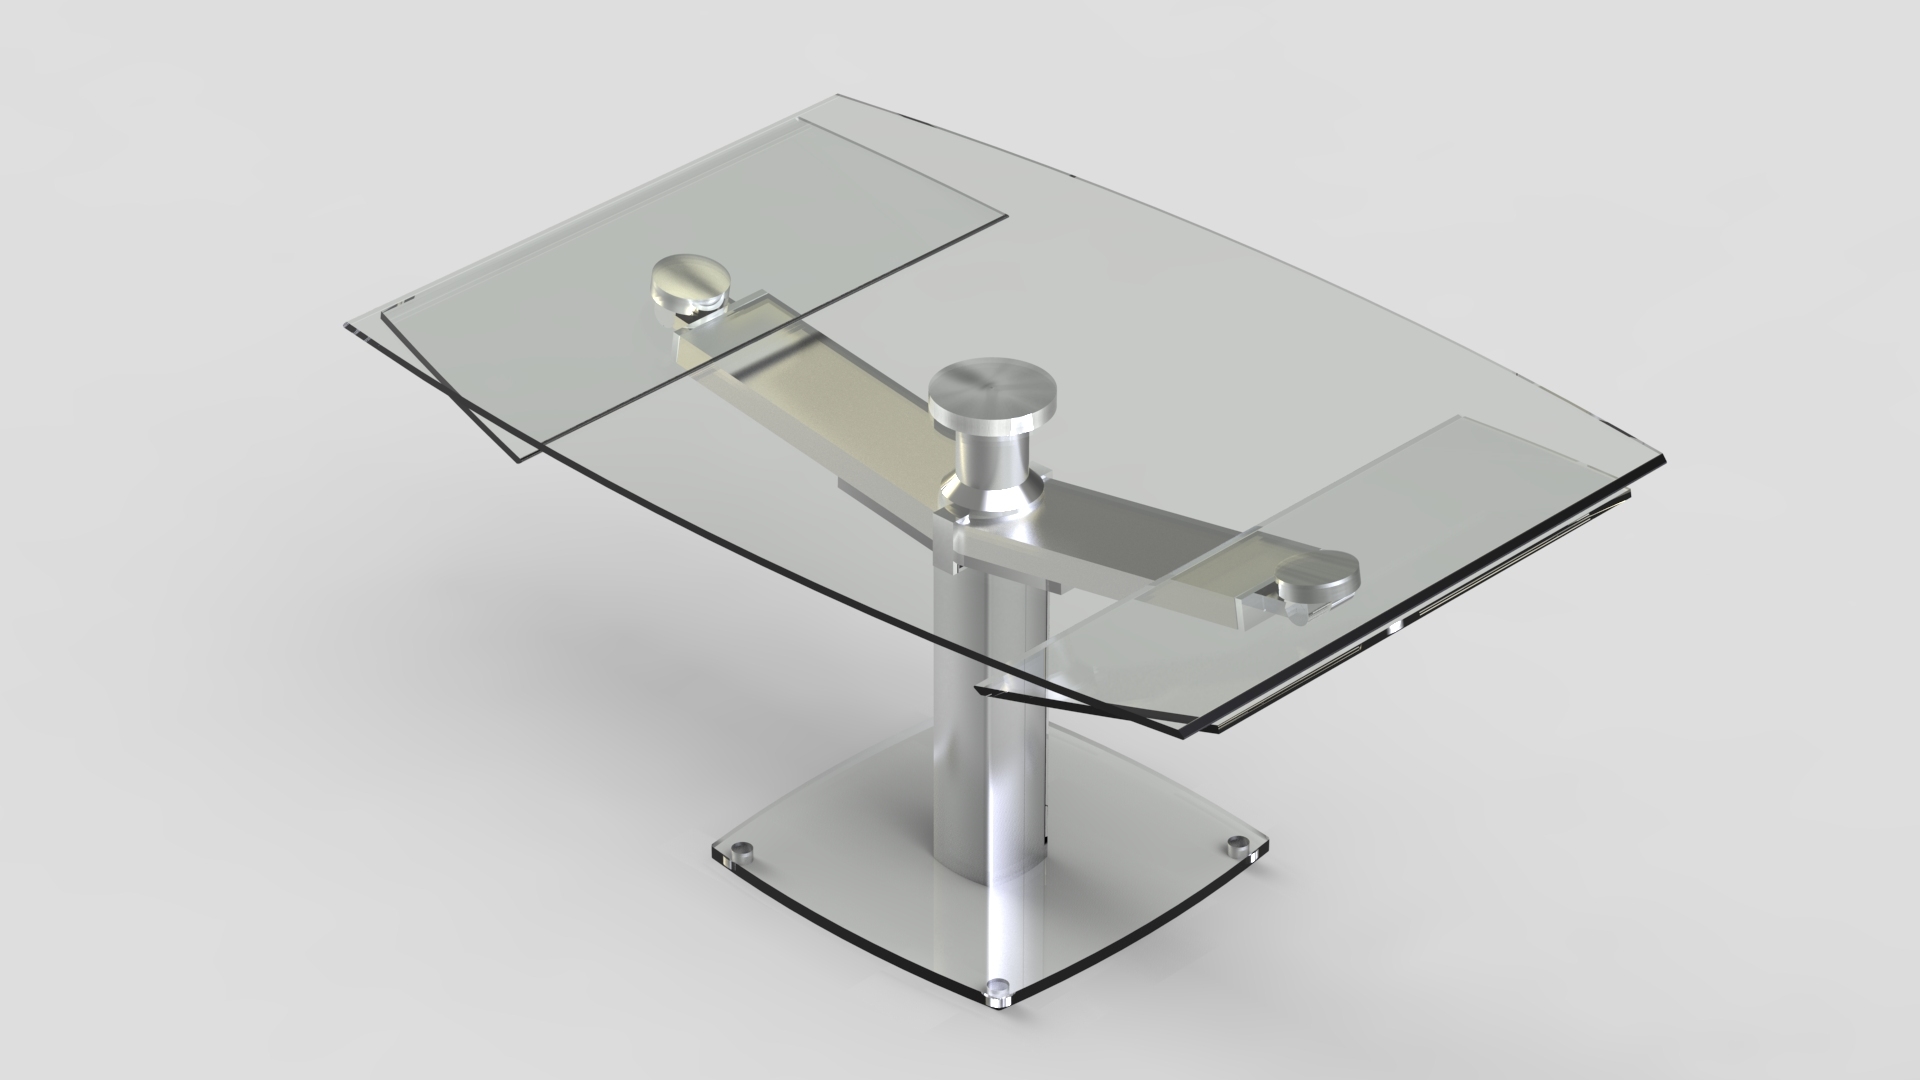 table rallonge design verre